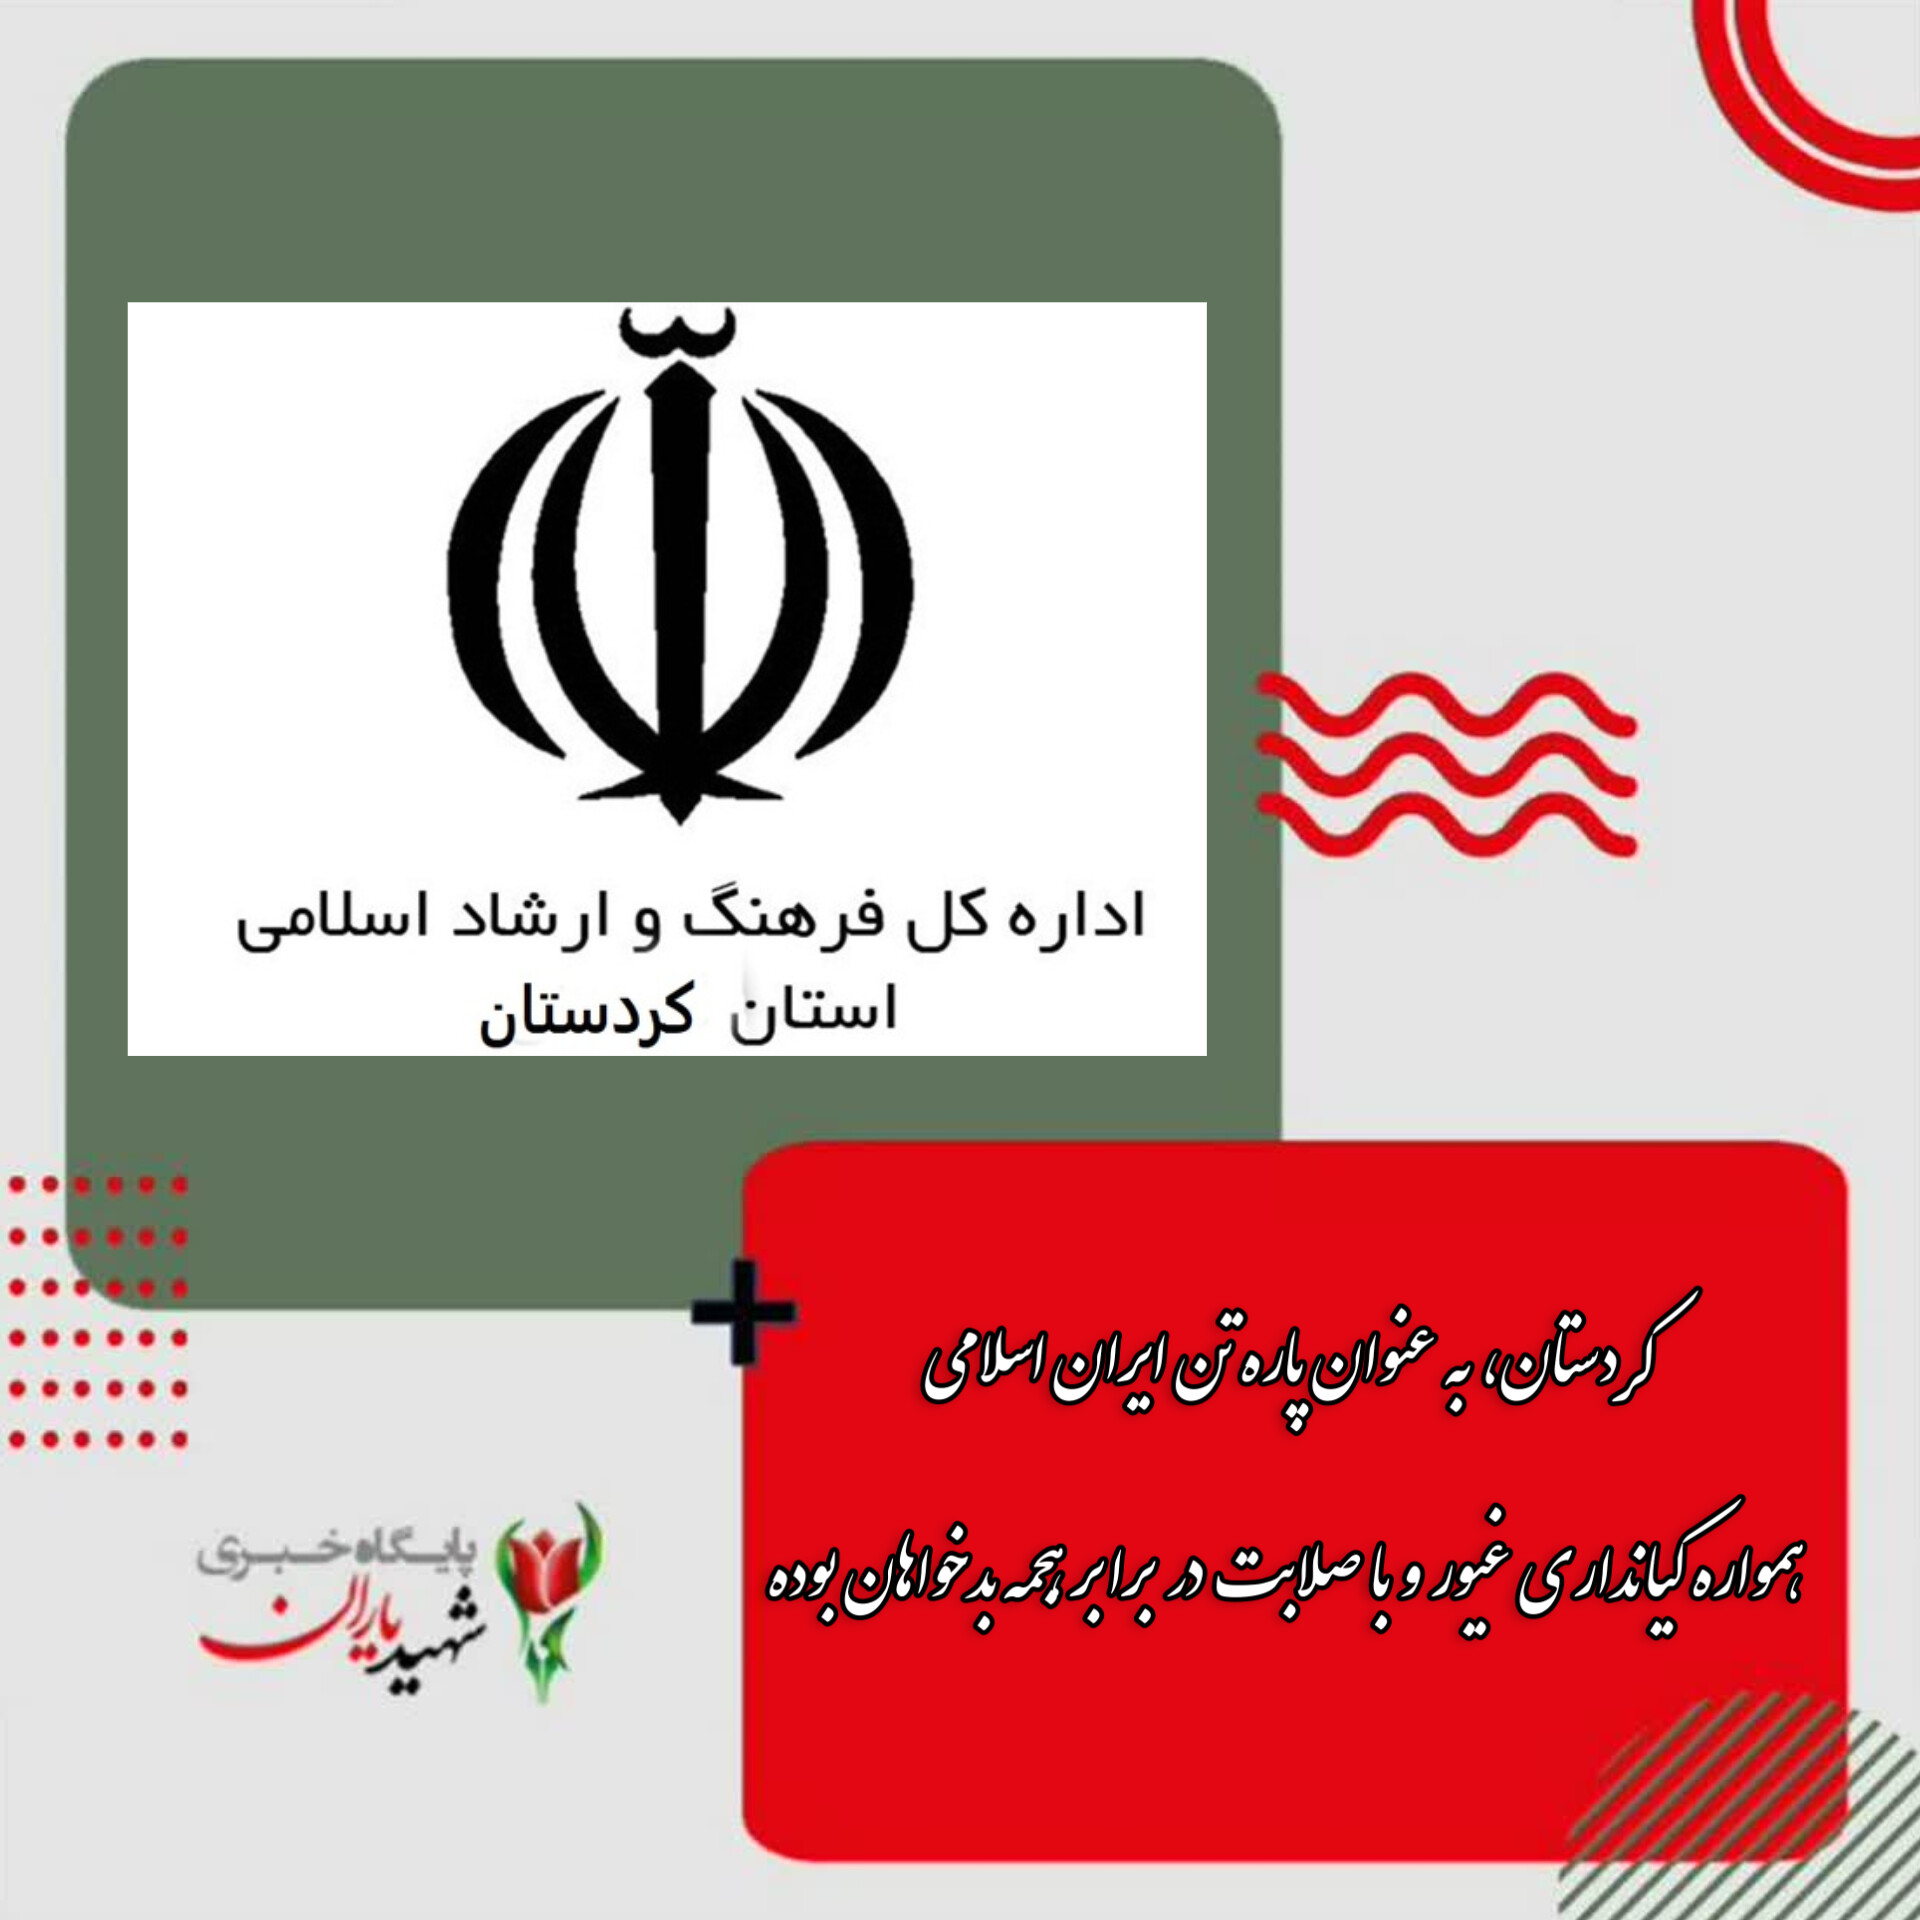 بیانیه اداره فرهنگ وارشاد استان کردستان: